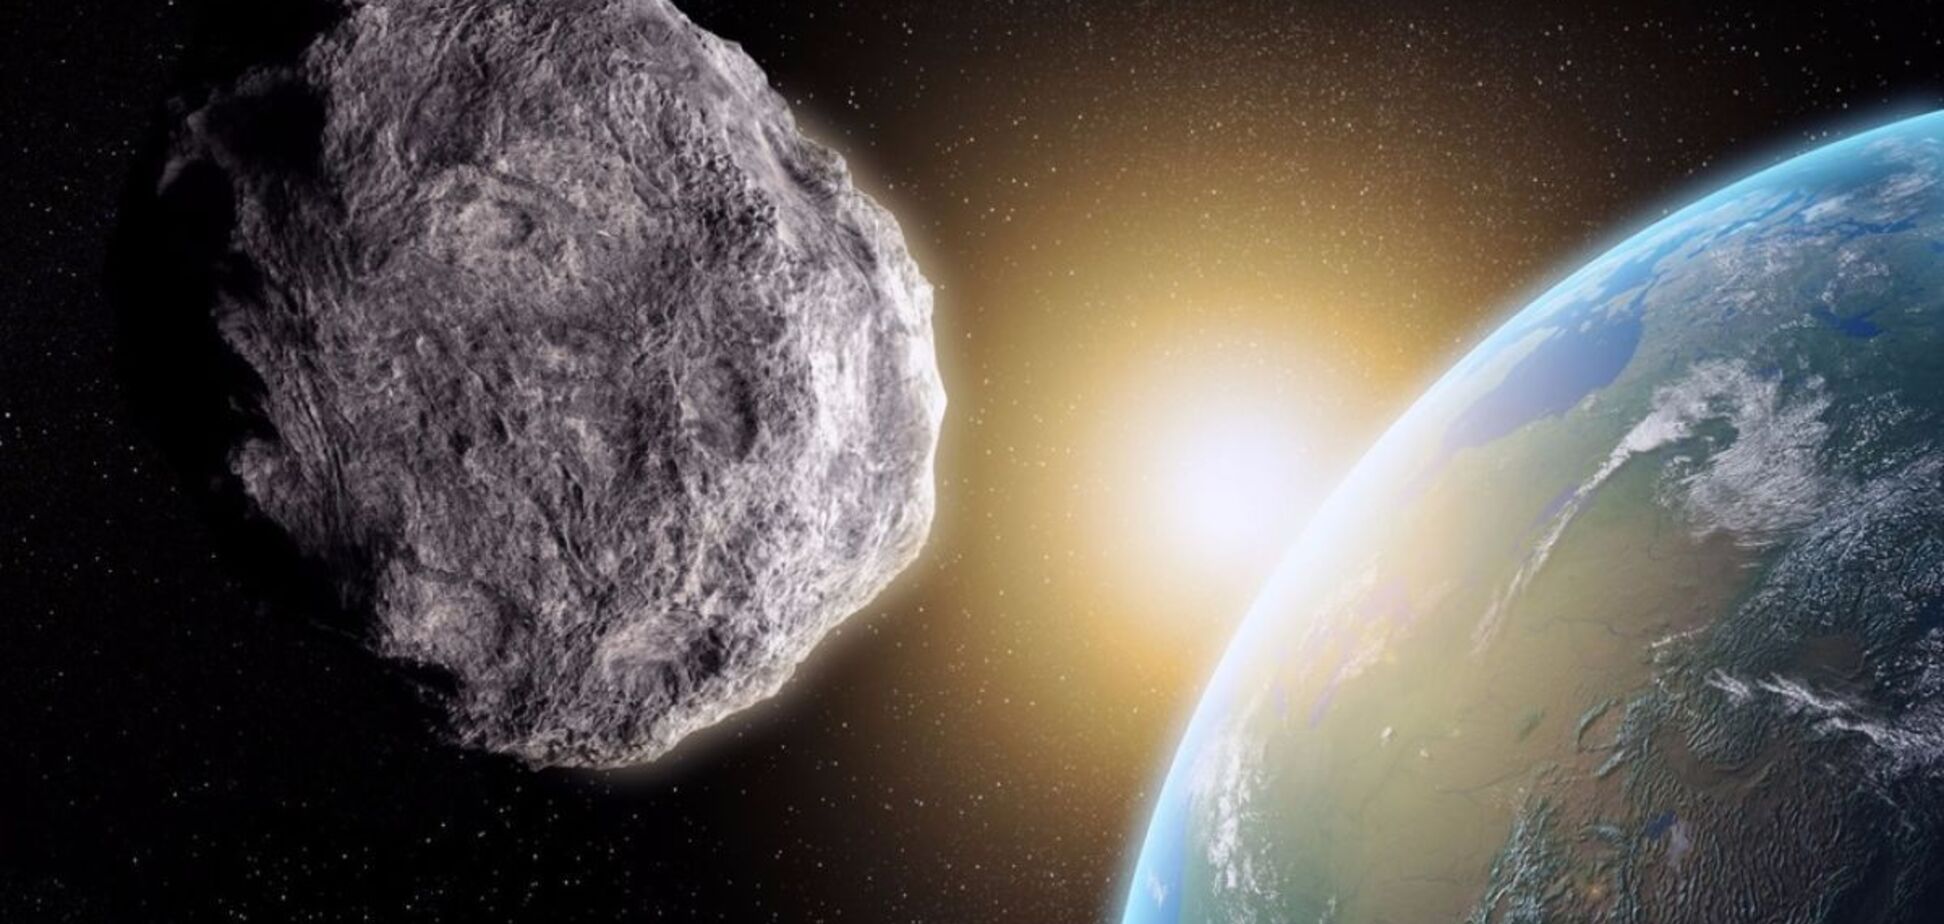 'Астероид столетия': NASA показали впечатляющие фото небесного тела